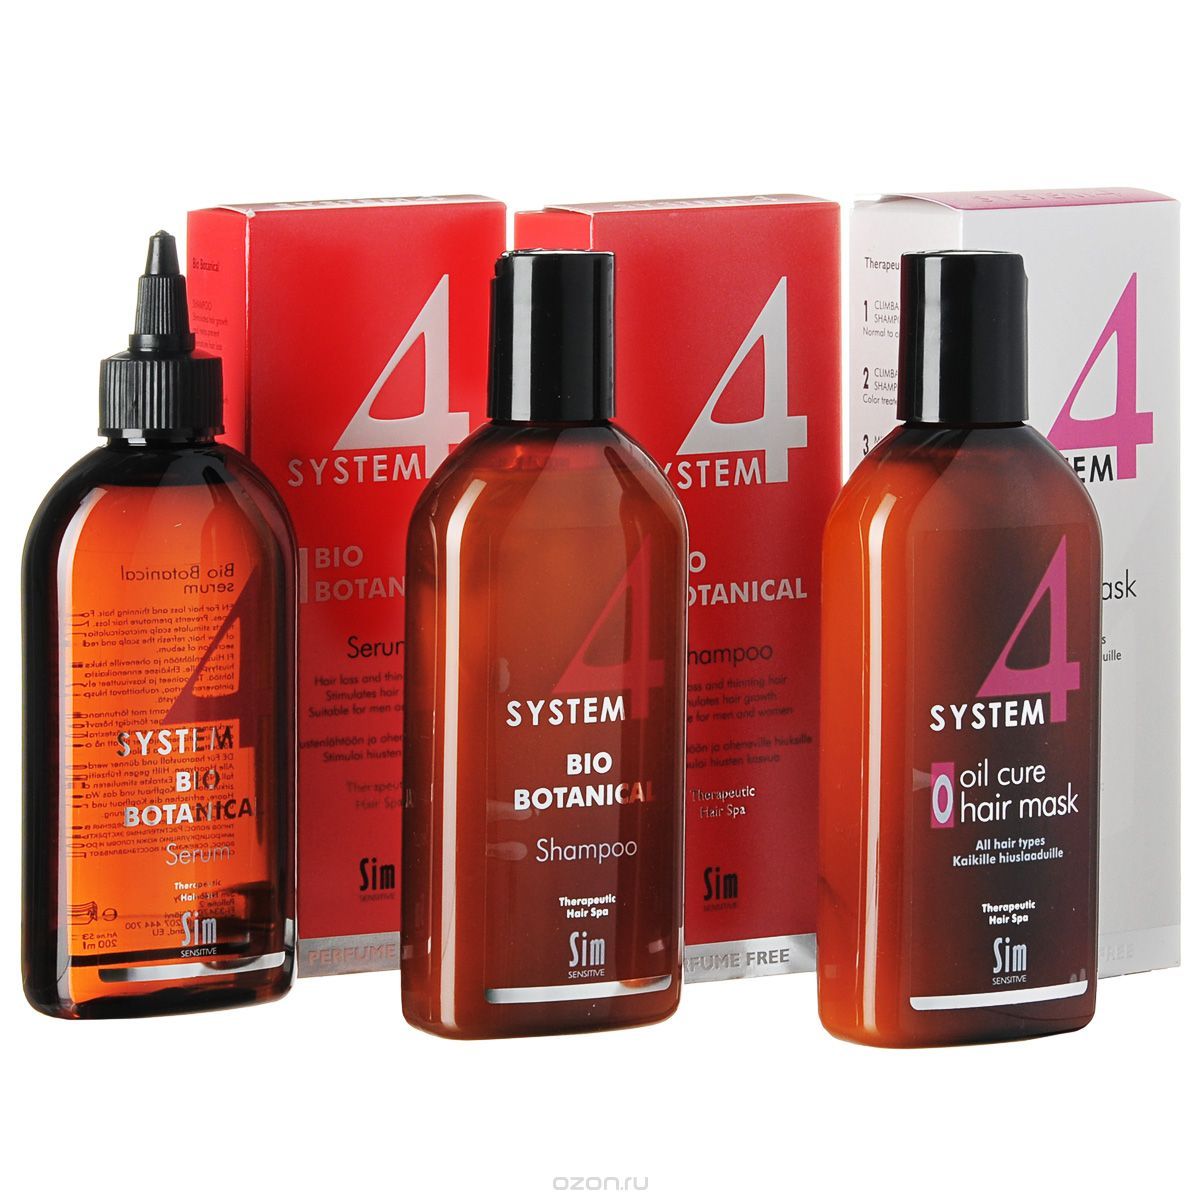 Средство комплексного применения для лечения выпадения волос и облысения систем 4 (system 4) sim finland oy. интересные товары | живая аптека